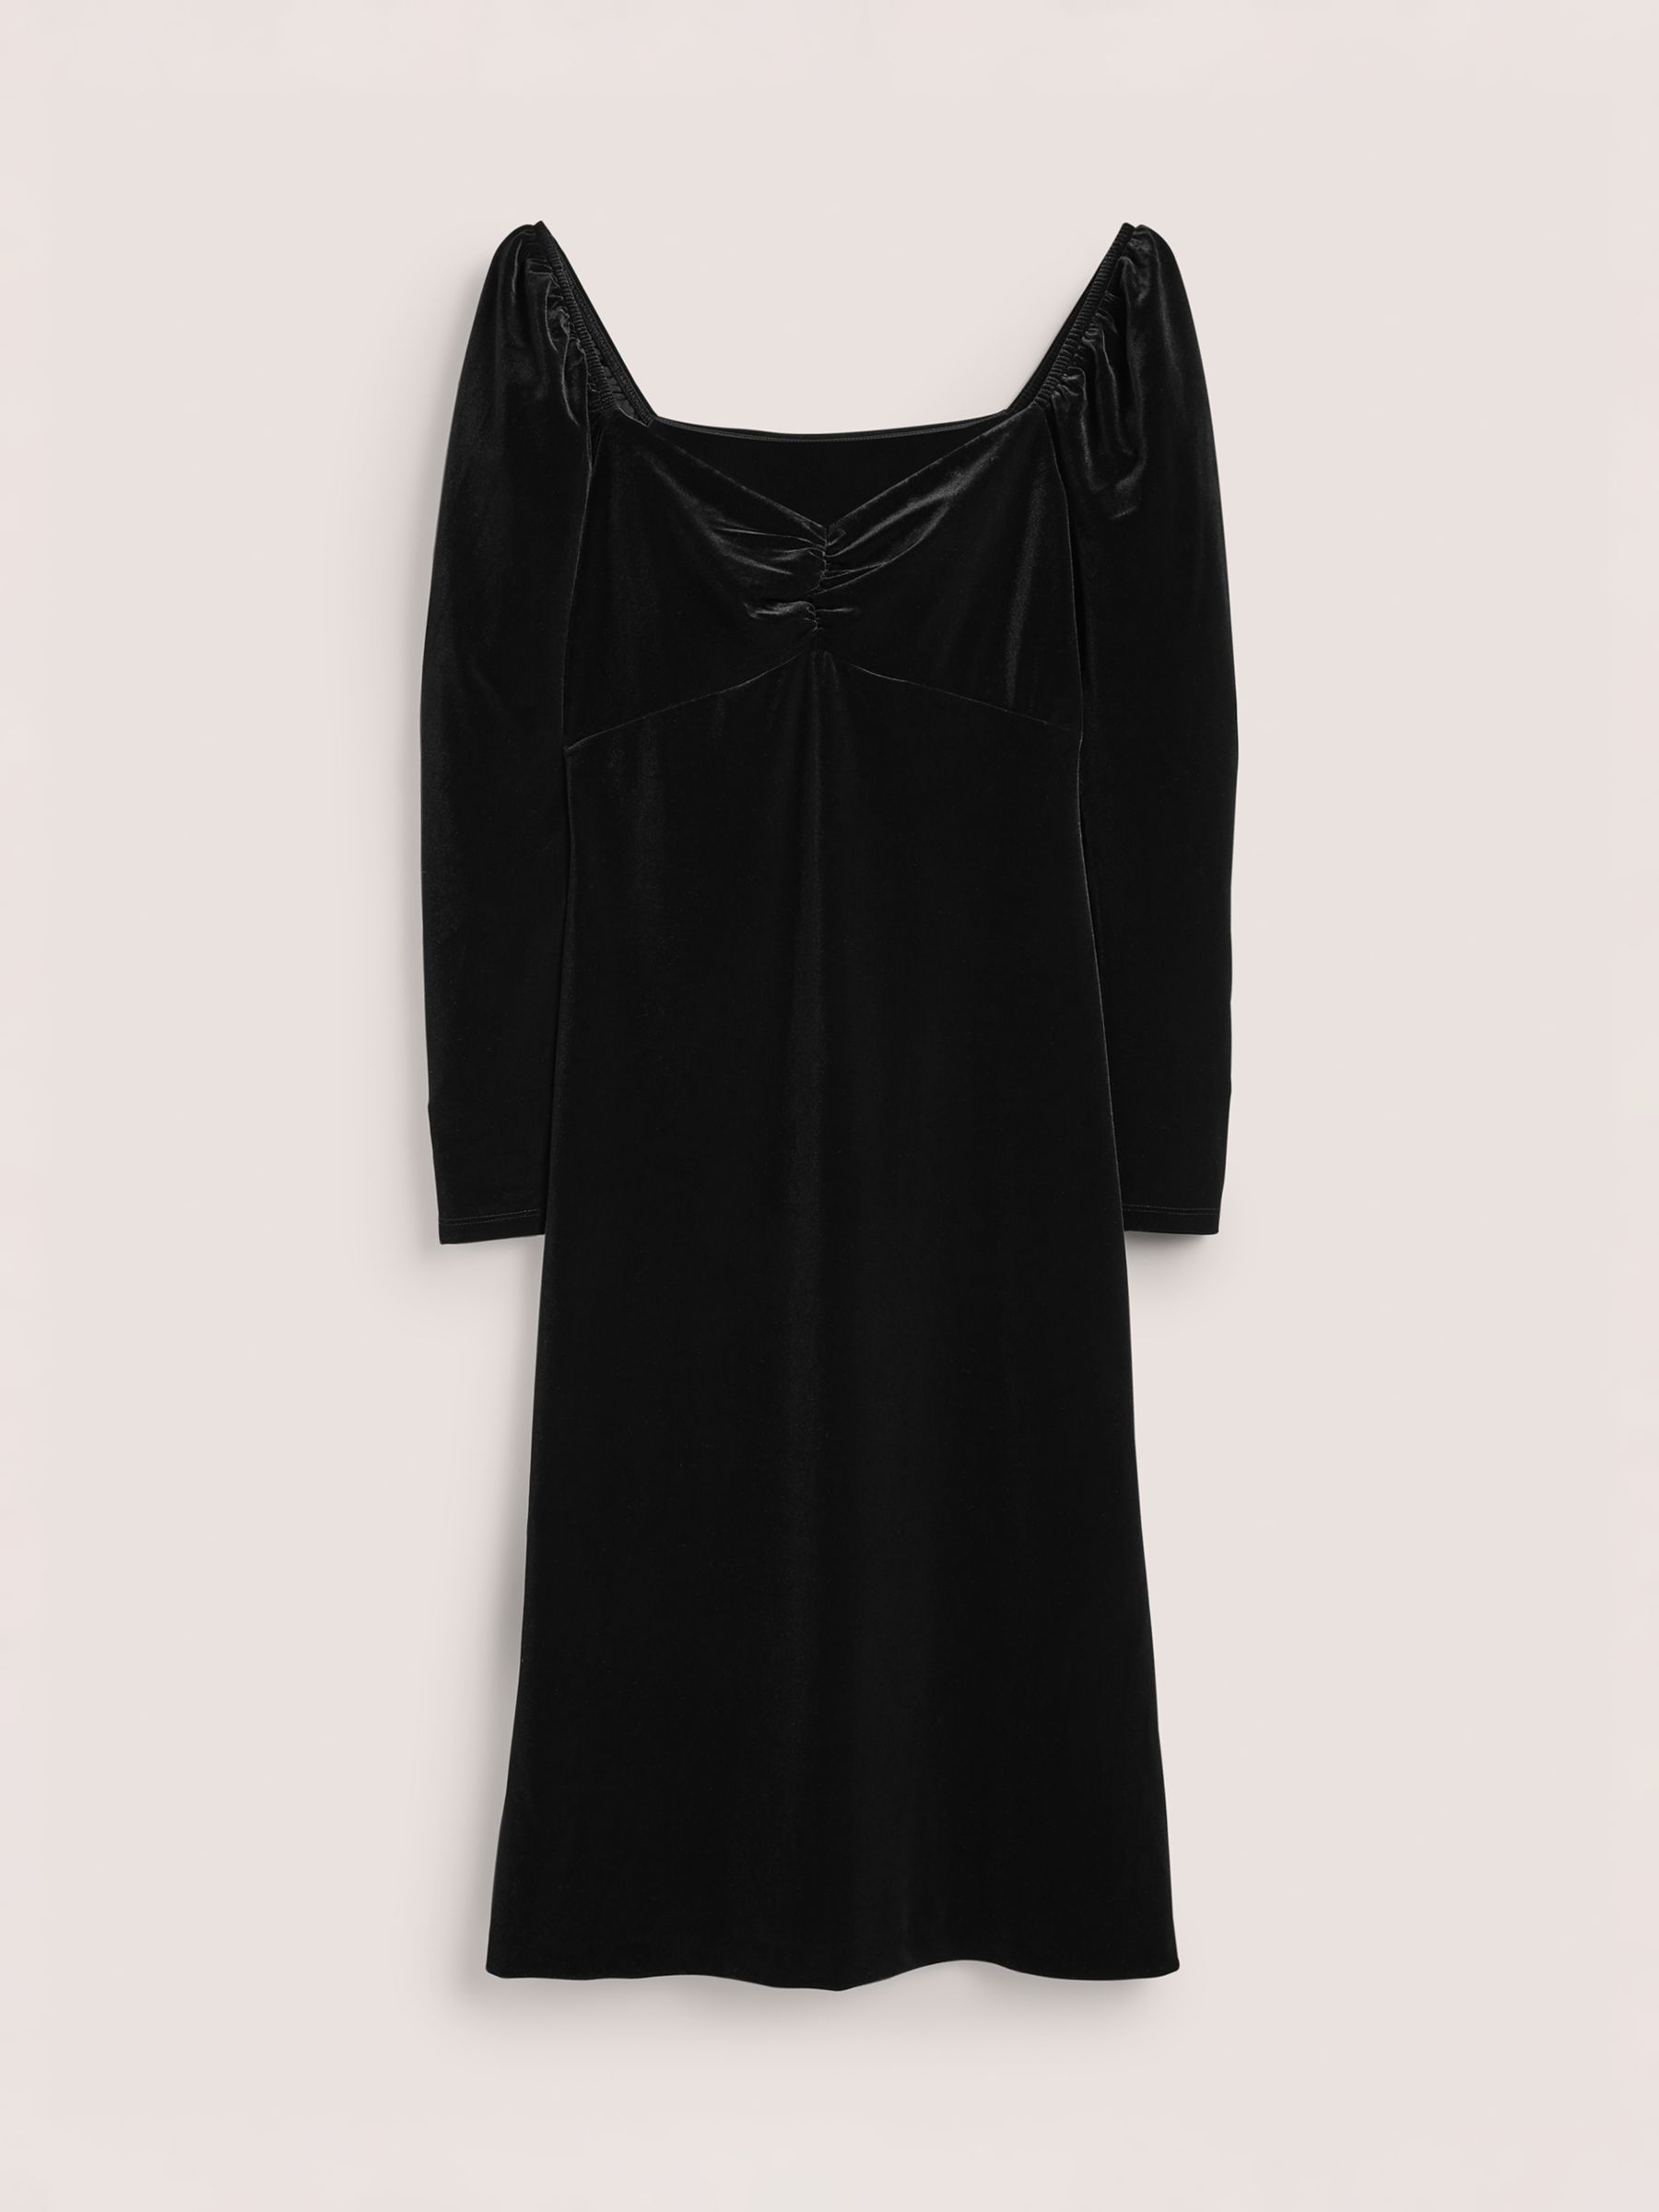 Boden Velvet Sweetheart Neckline Midi Dress, Black, 12